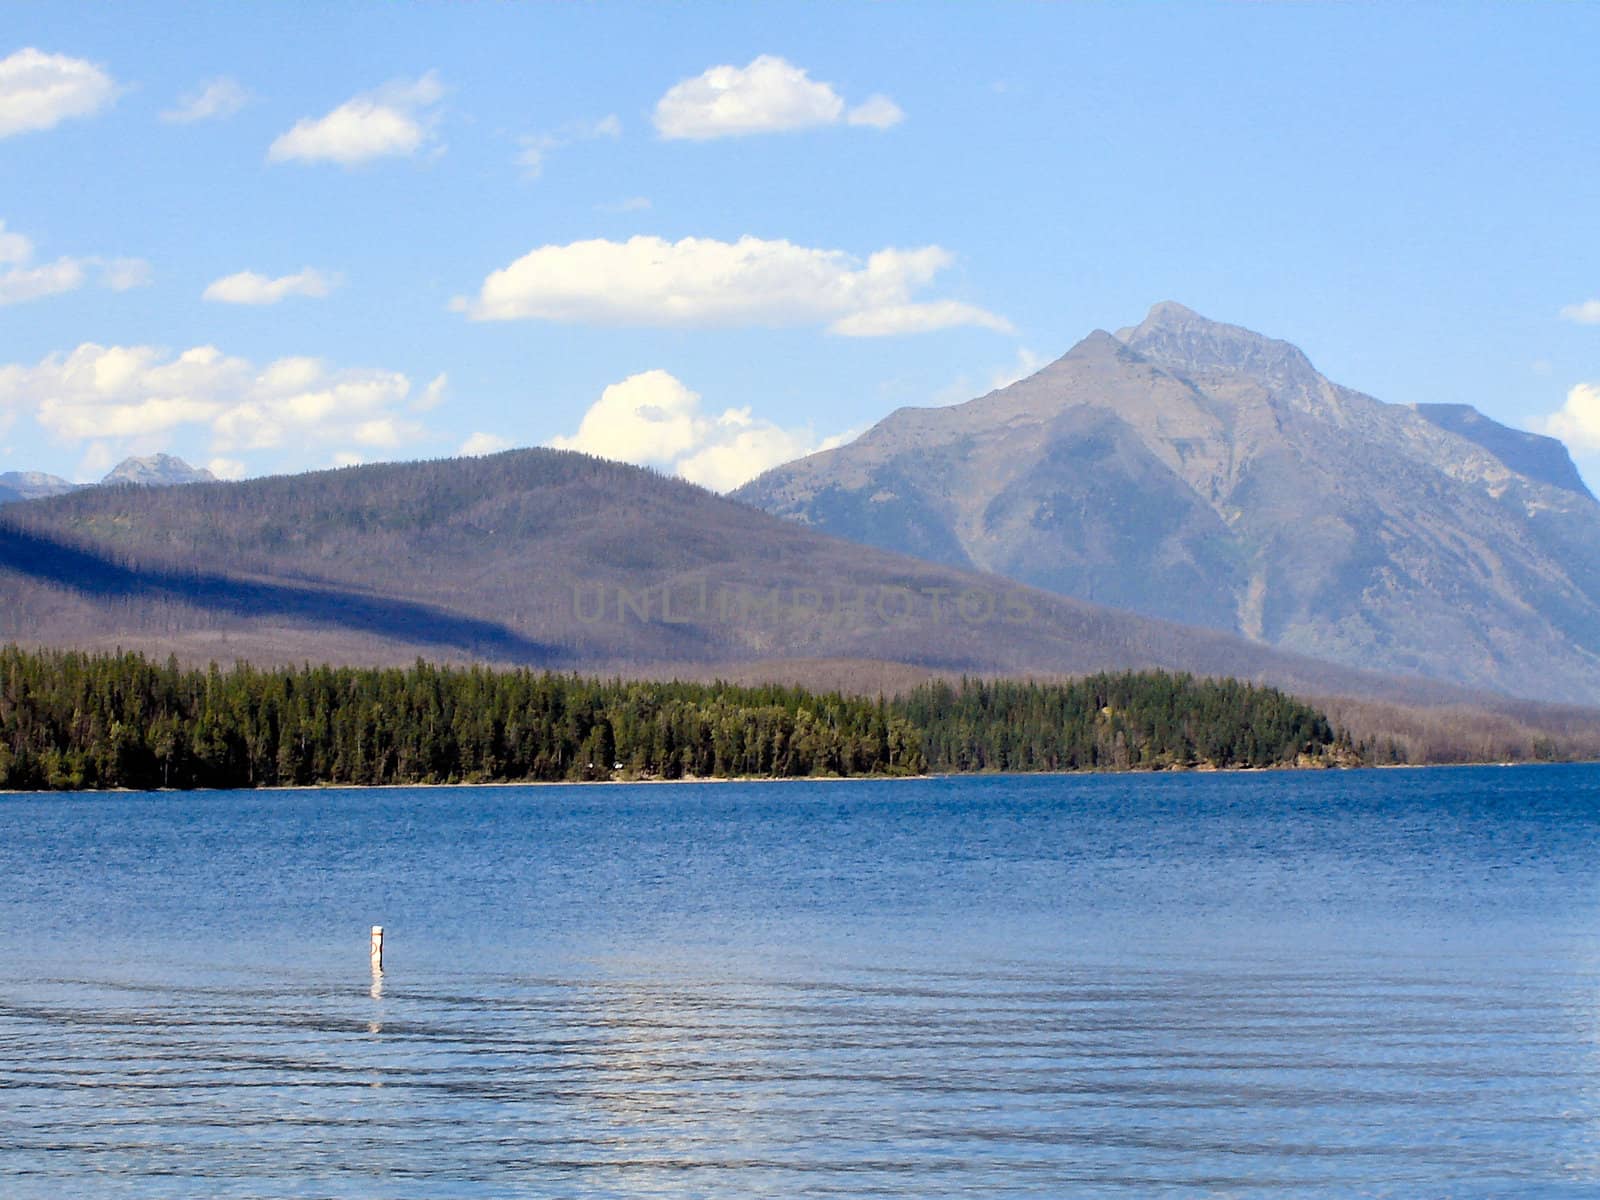 Mountain Lakes